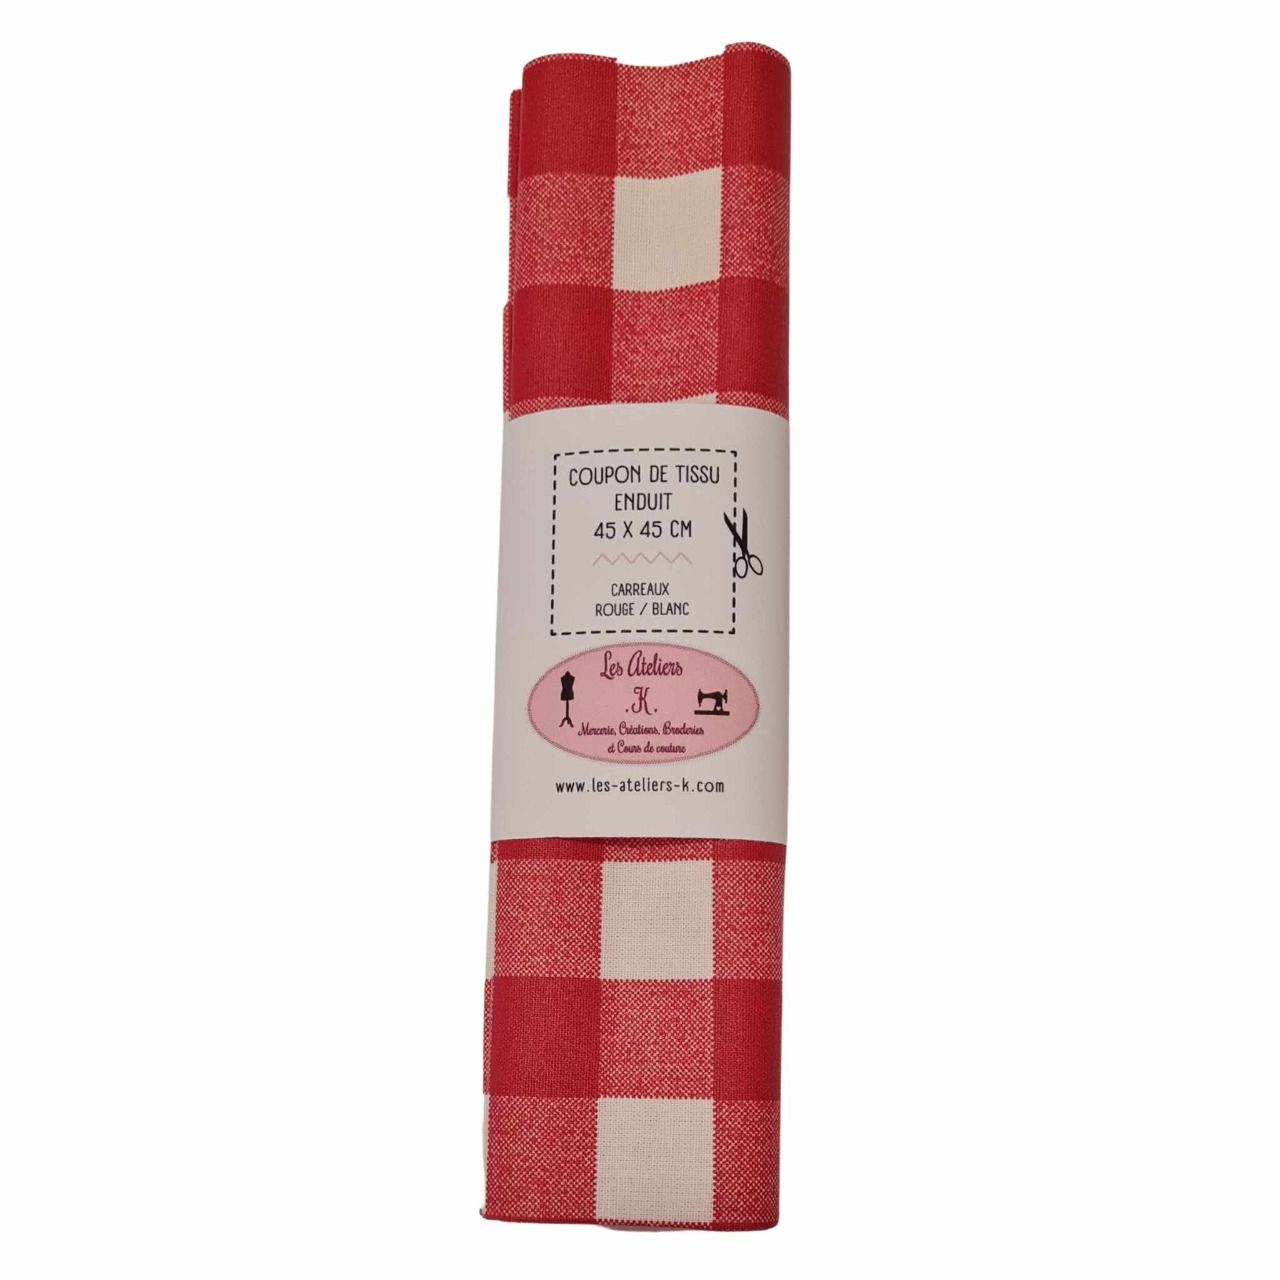 Coupon de tissu en coton enduit carreaux écru / rouge